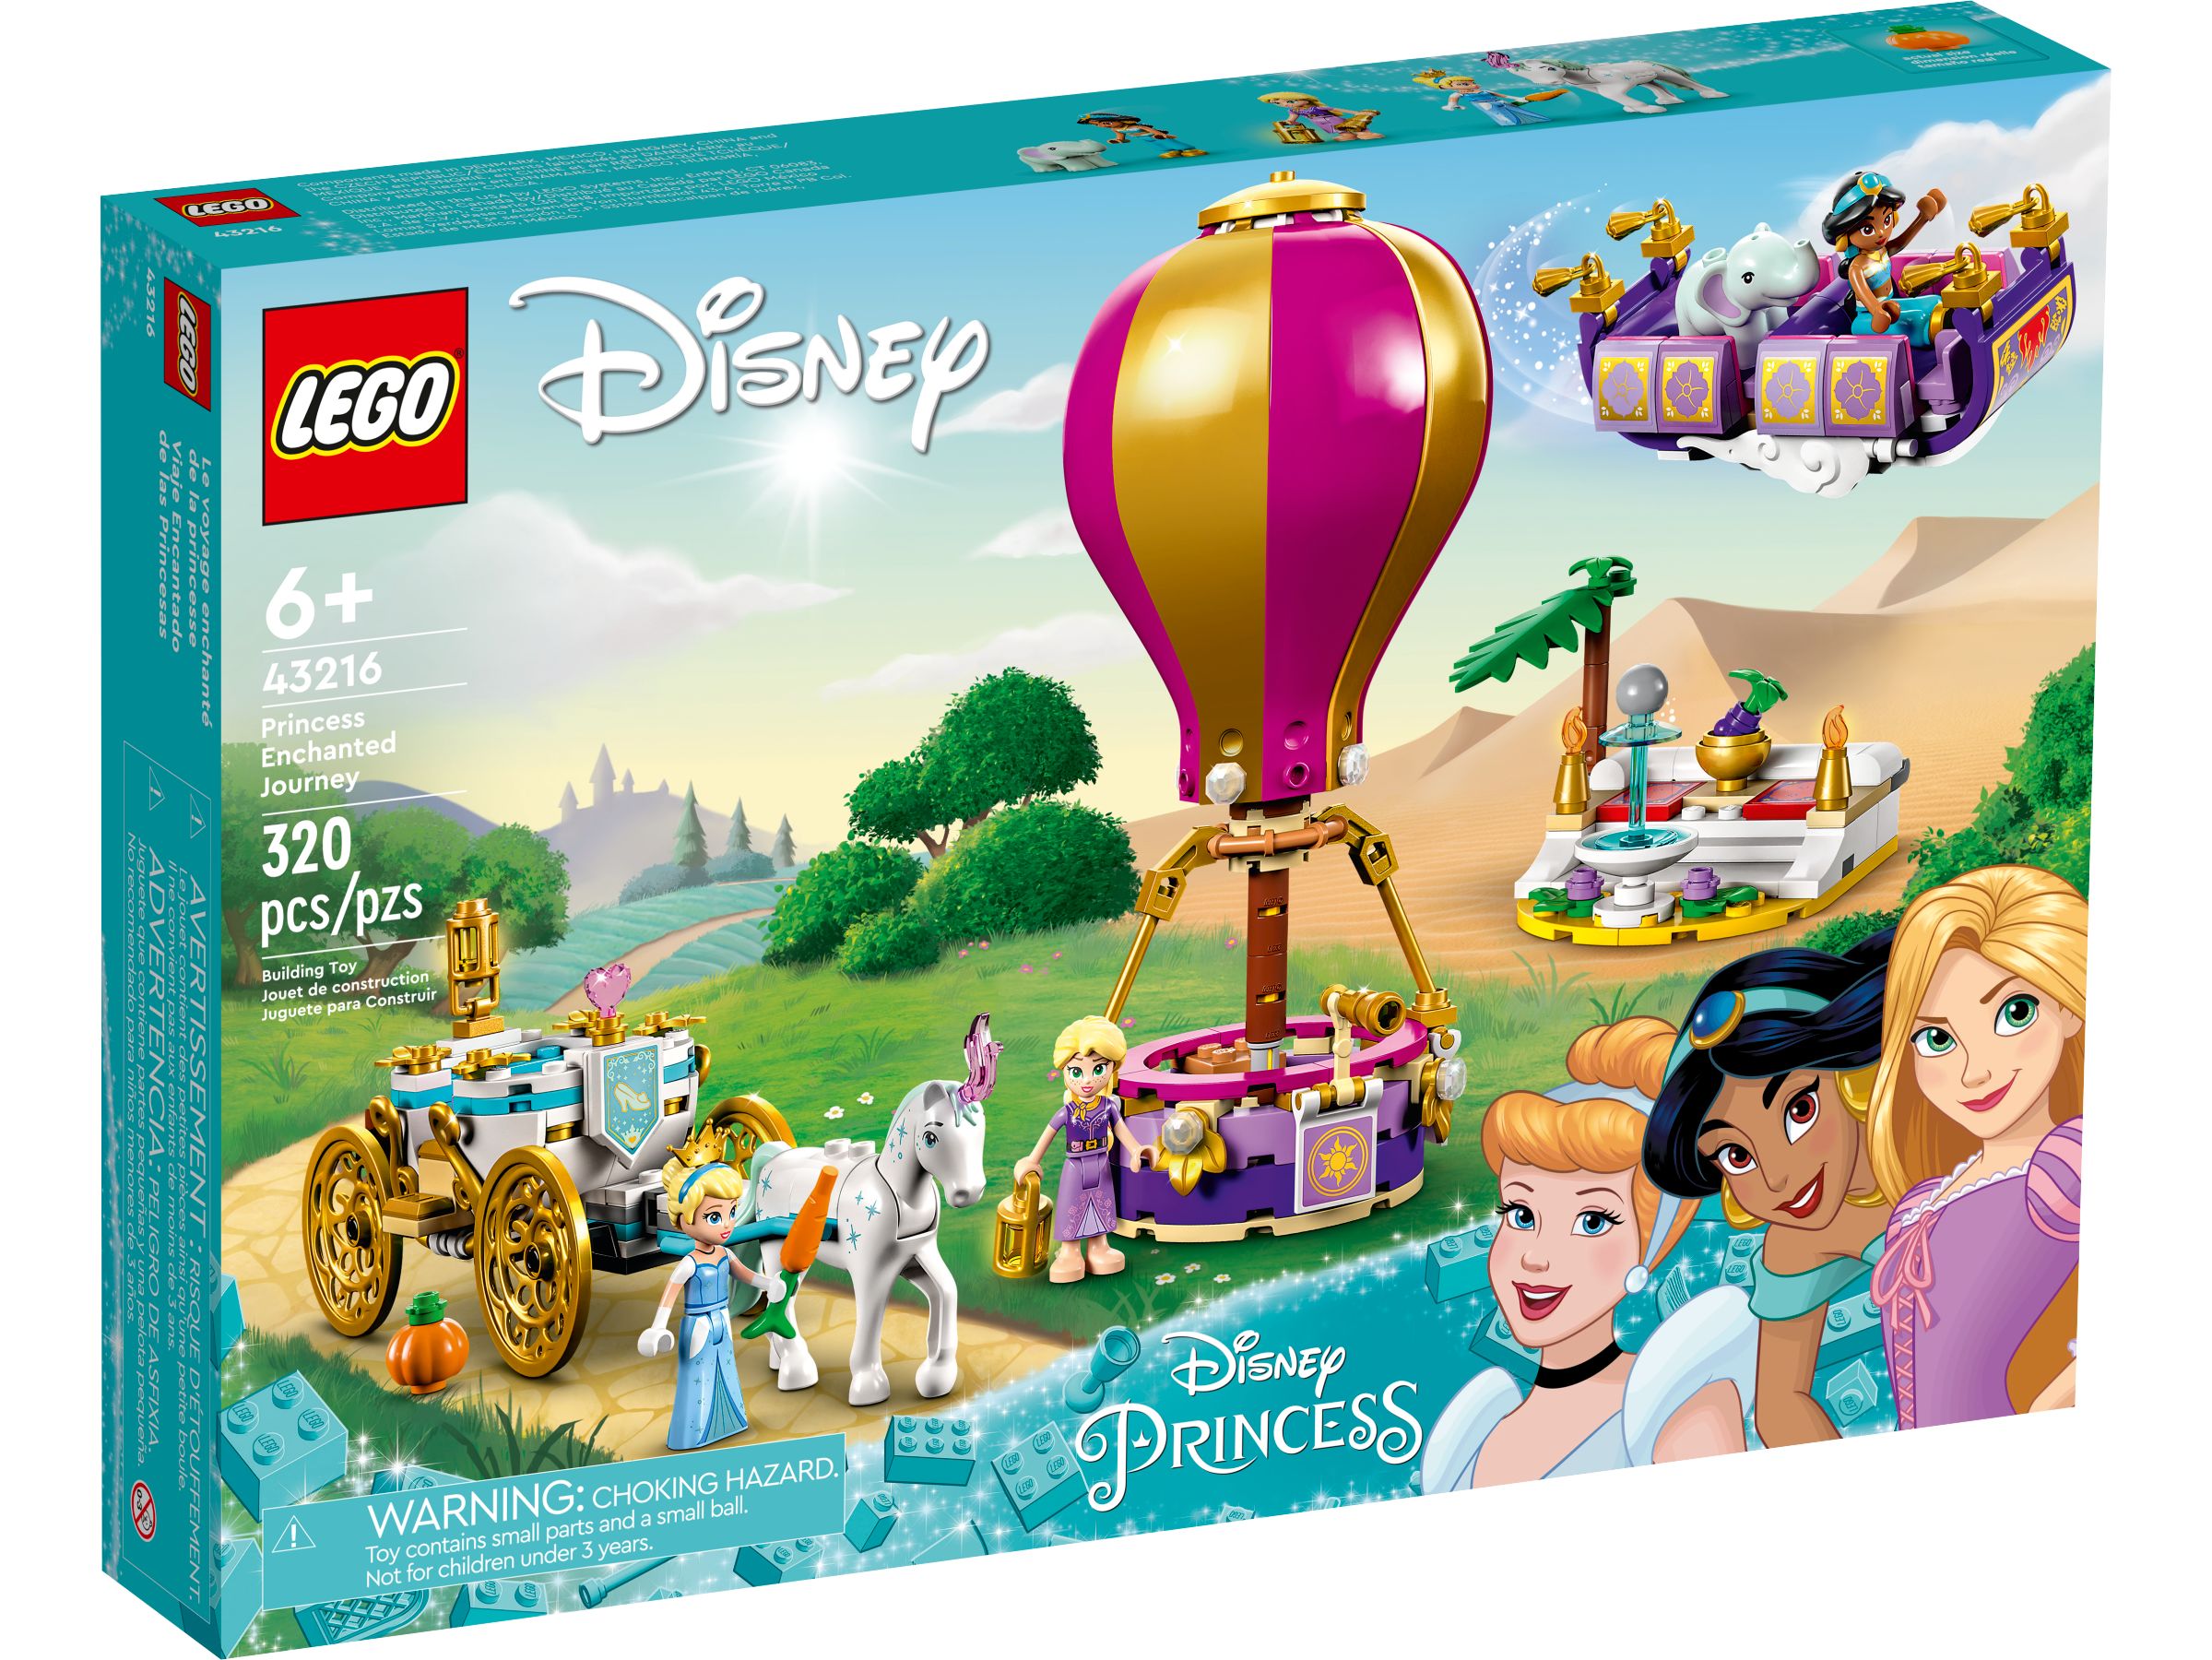 LEGO Disney 5008115 Prinzessinnen-Paket LEGO_43216_alt1.jpg